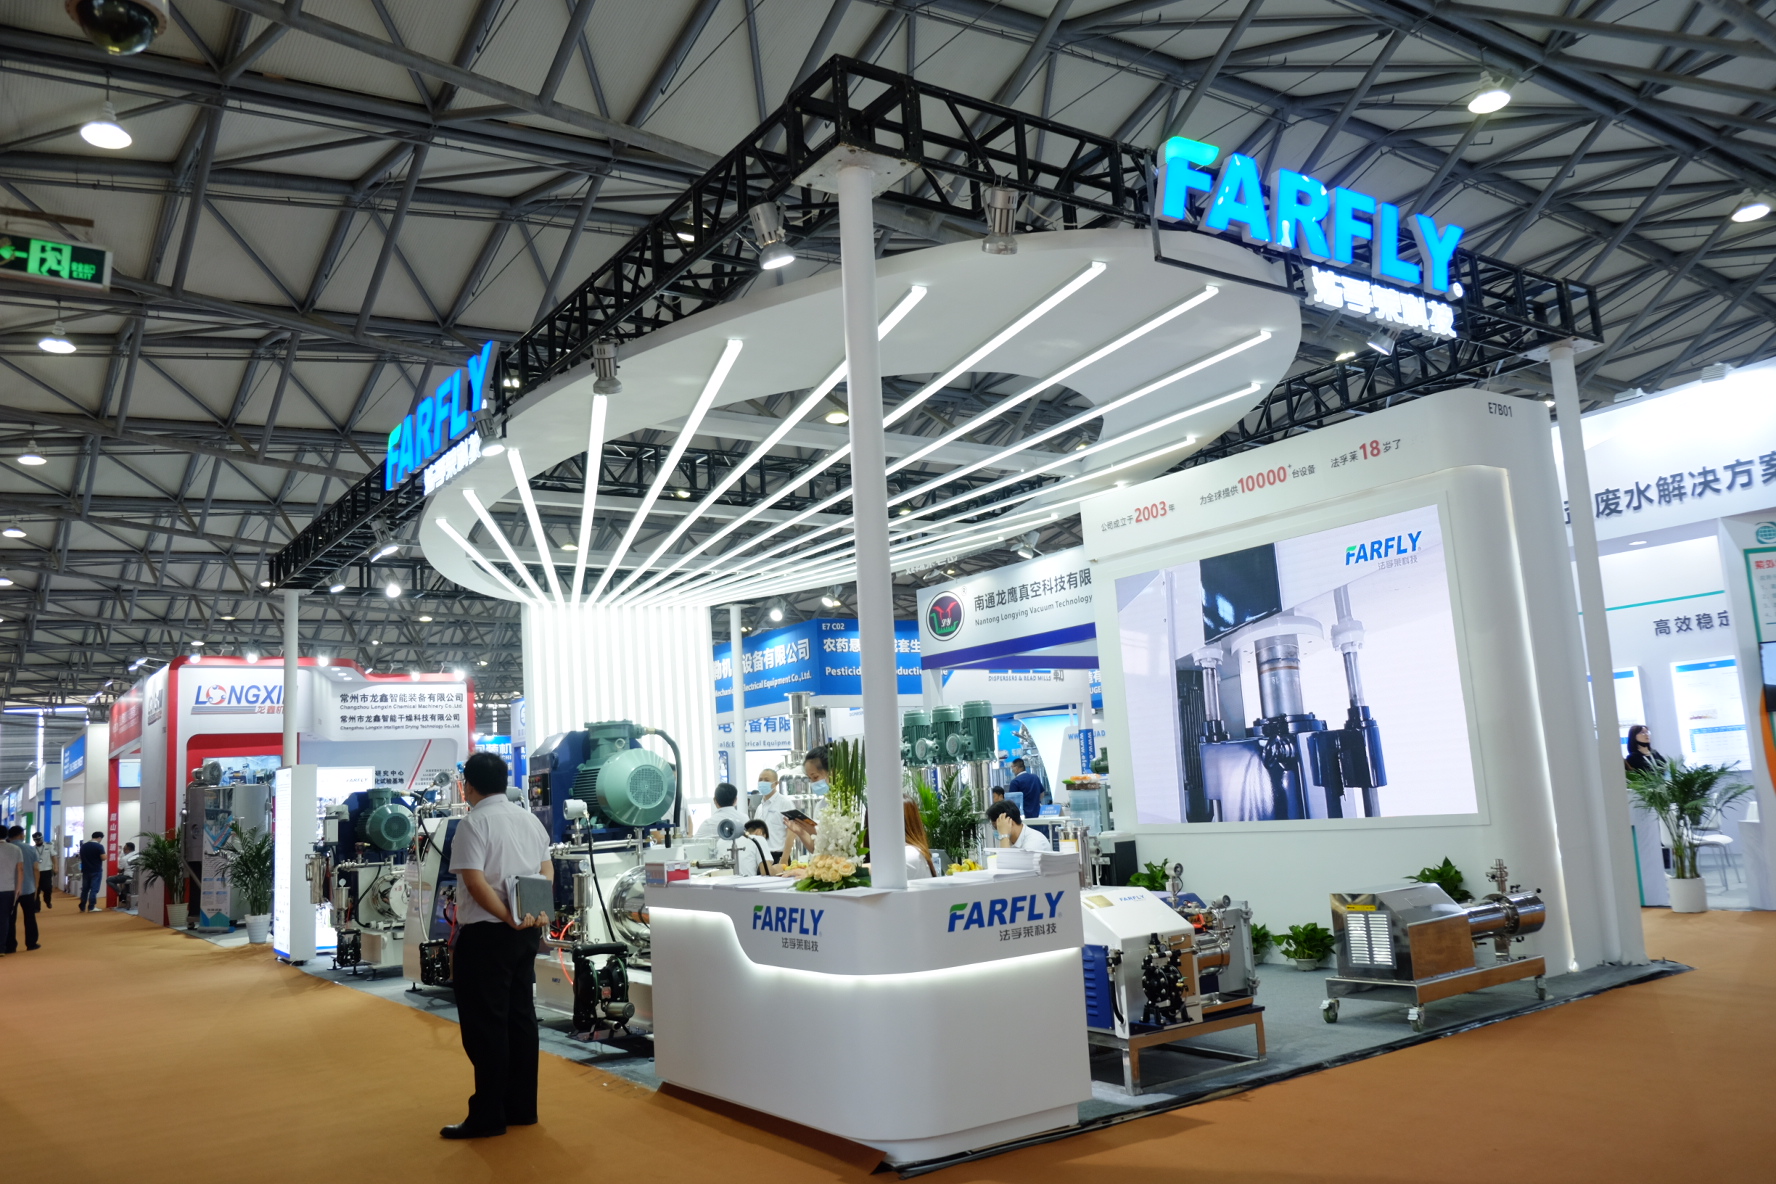 En respuesta a sus altas expectativas, hemos regresado con fuerza. Farfly Shanghai en CAC2021.